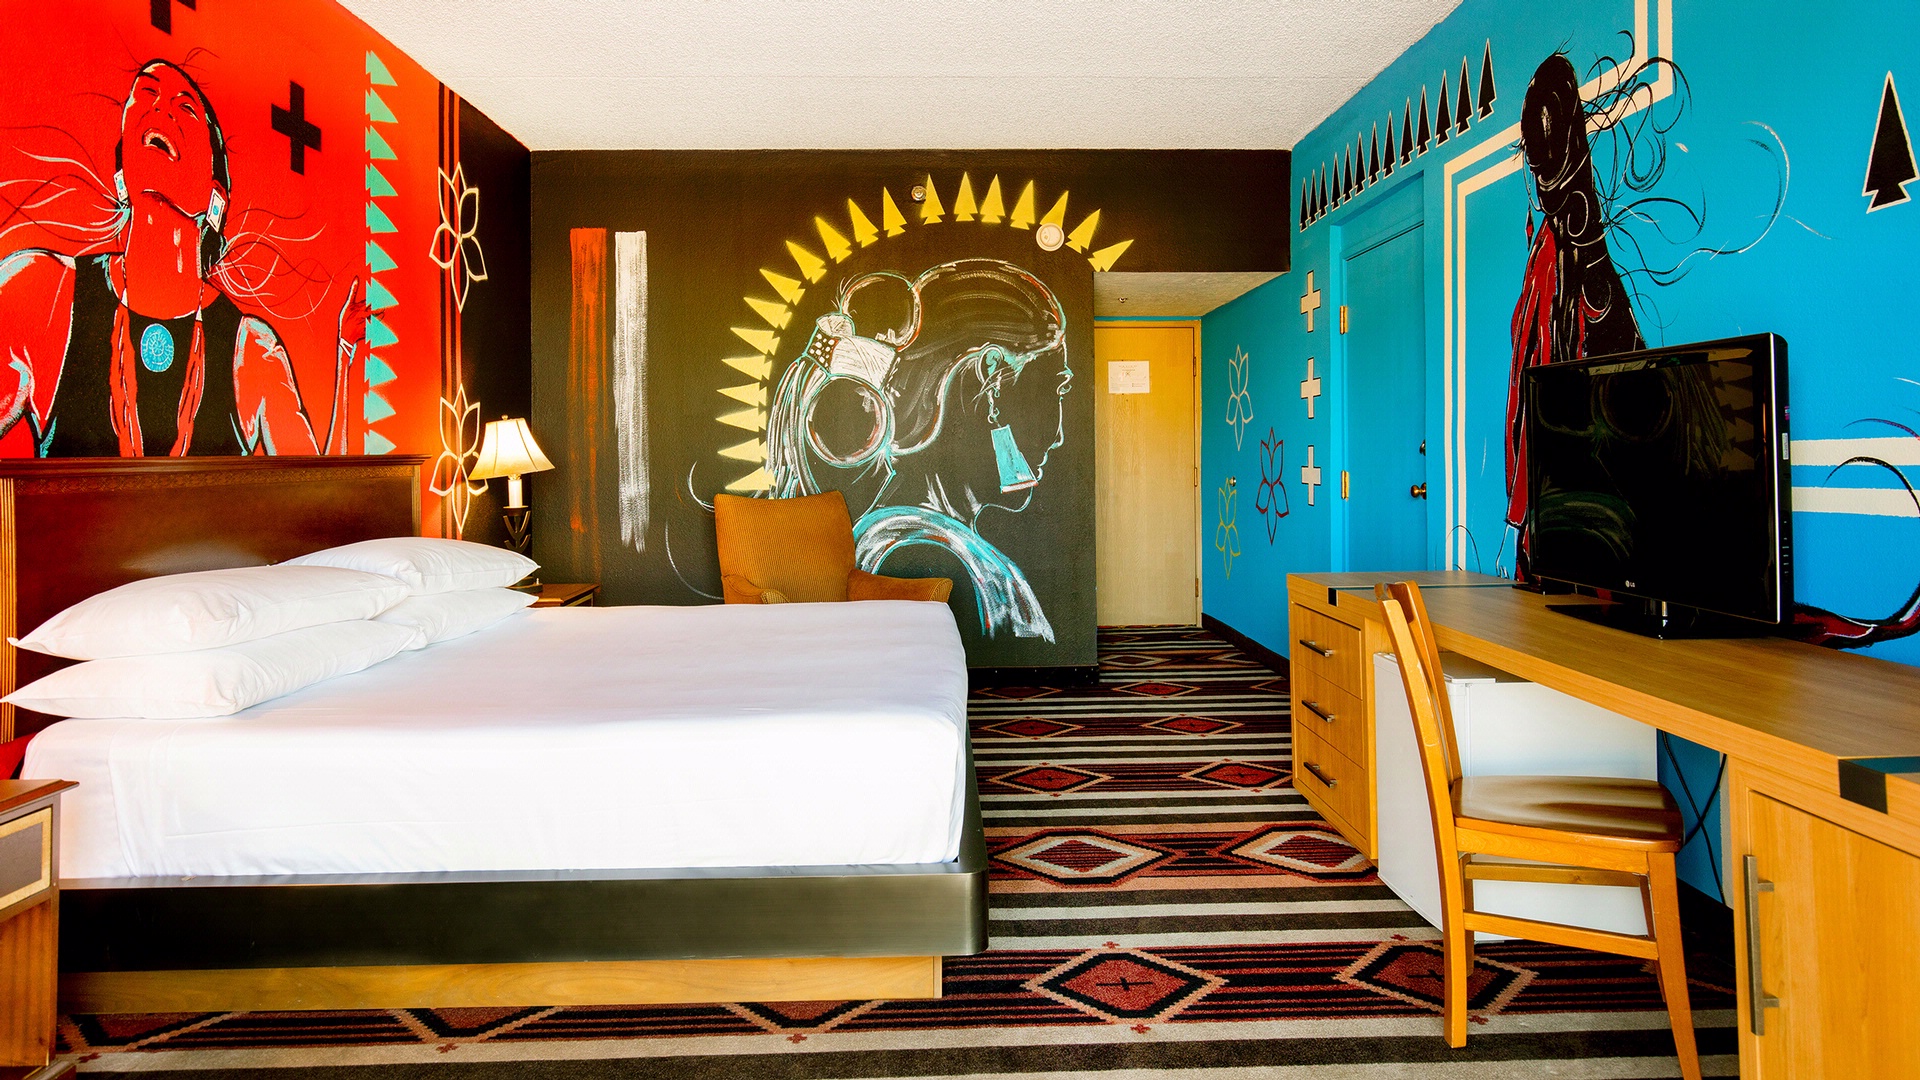 Albuquerque Hotel | Nativo Lodge | Best Value Hotel